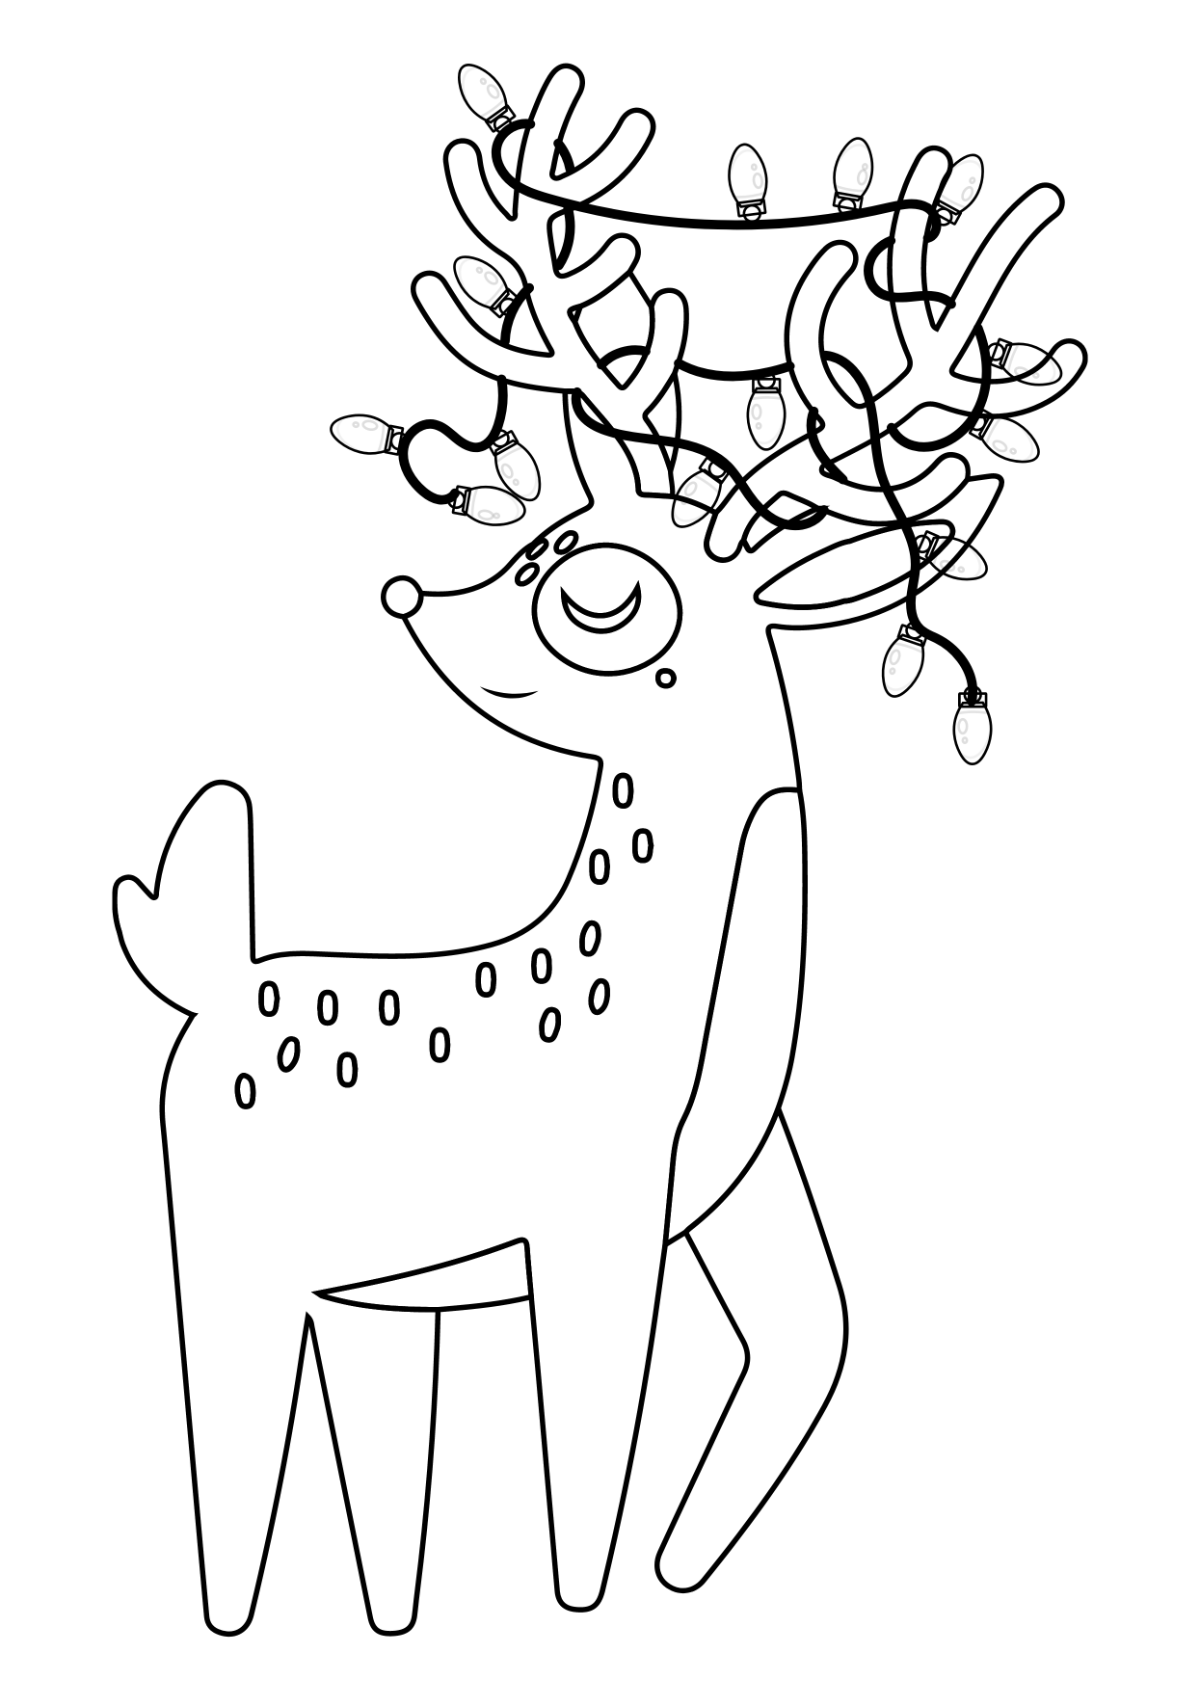 Christmas Reindeer Drawing Template